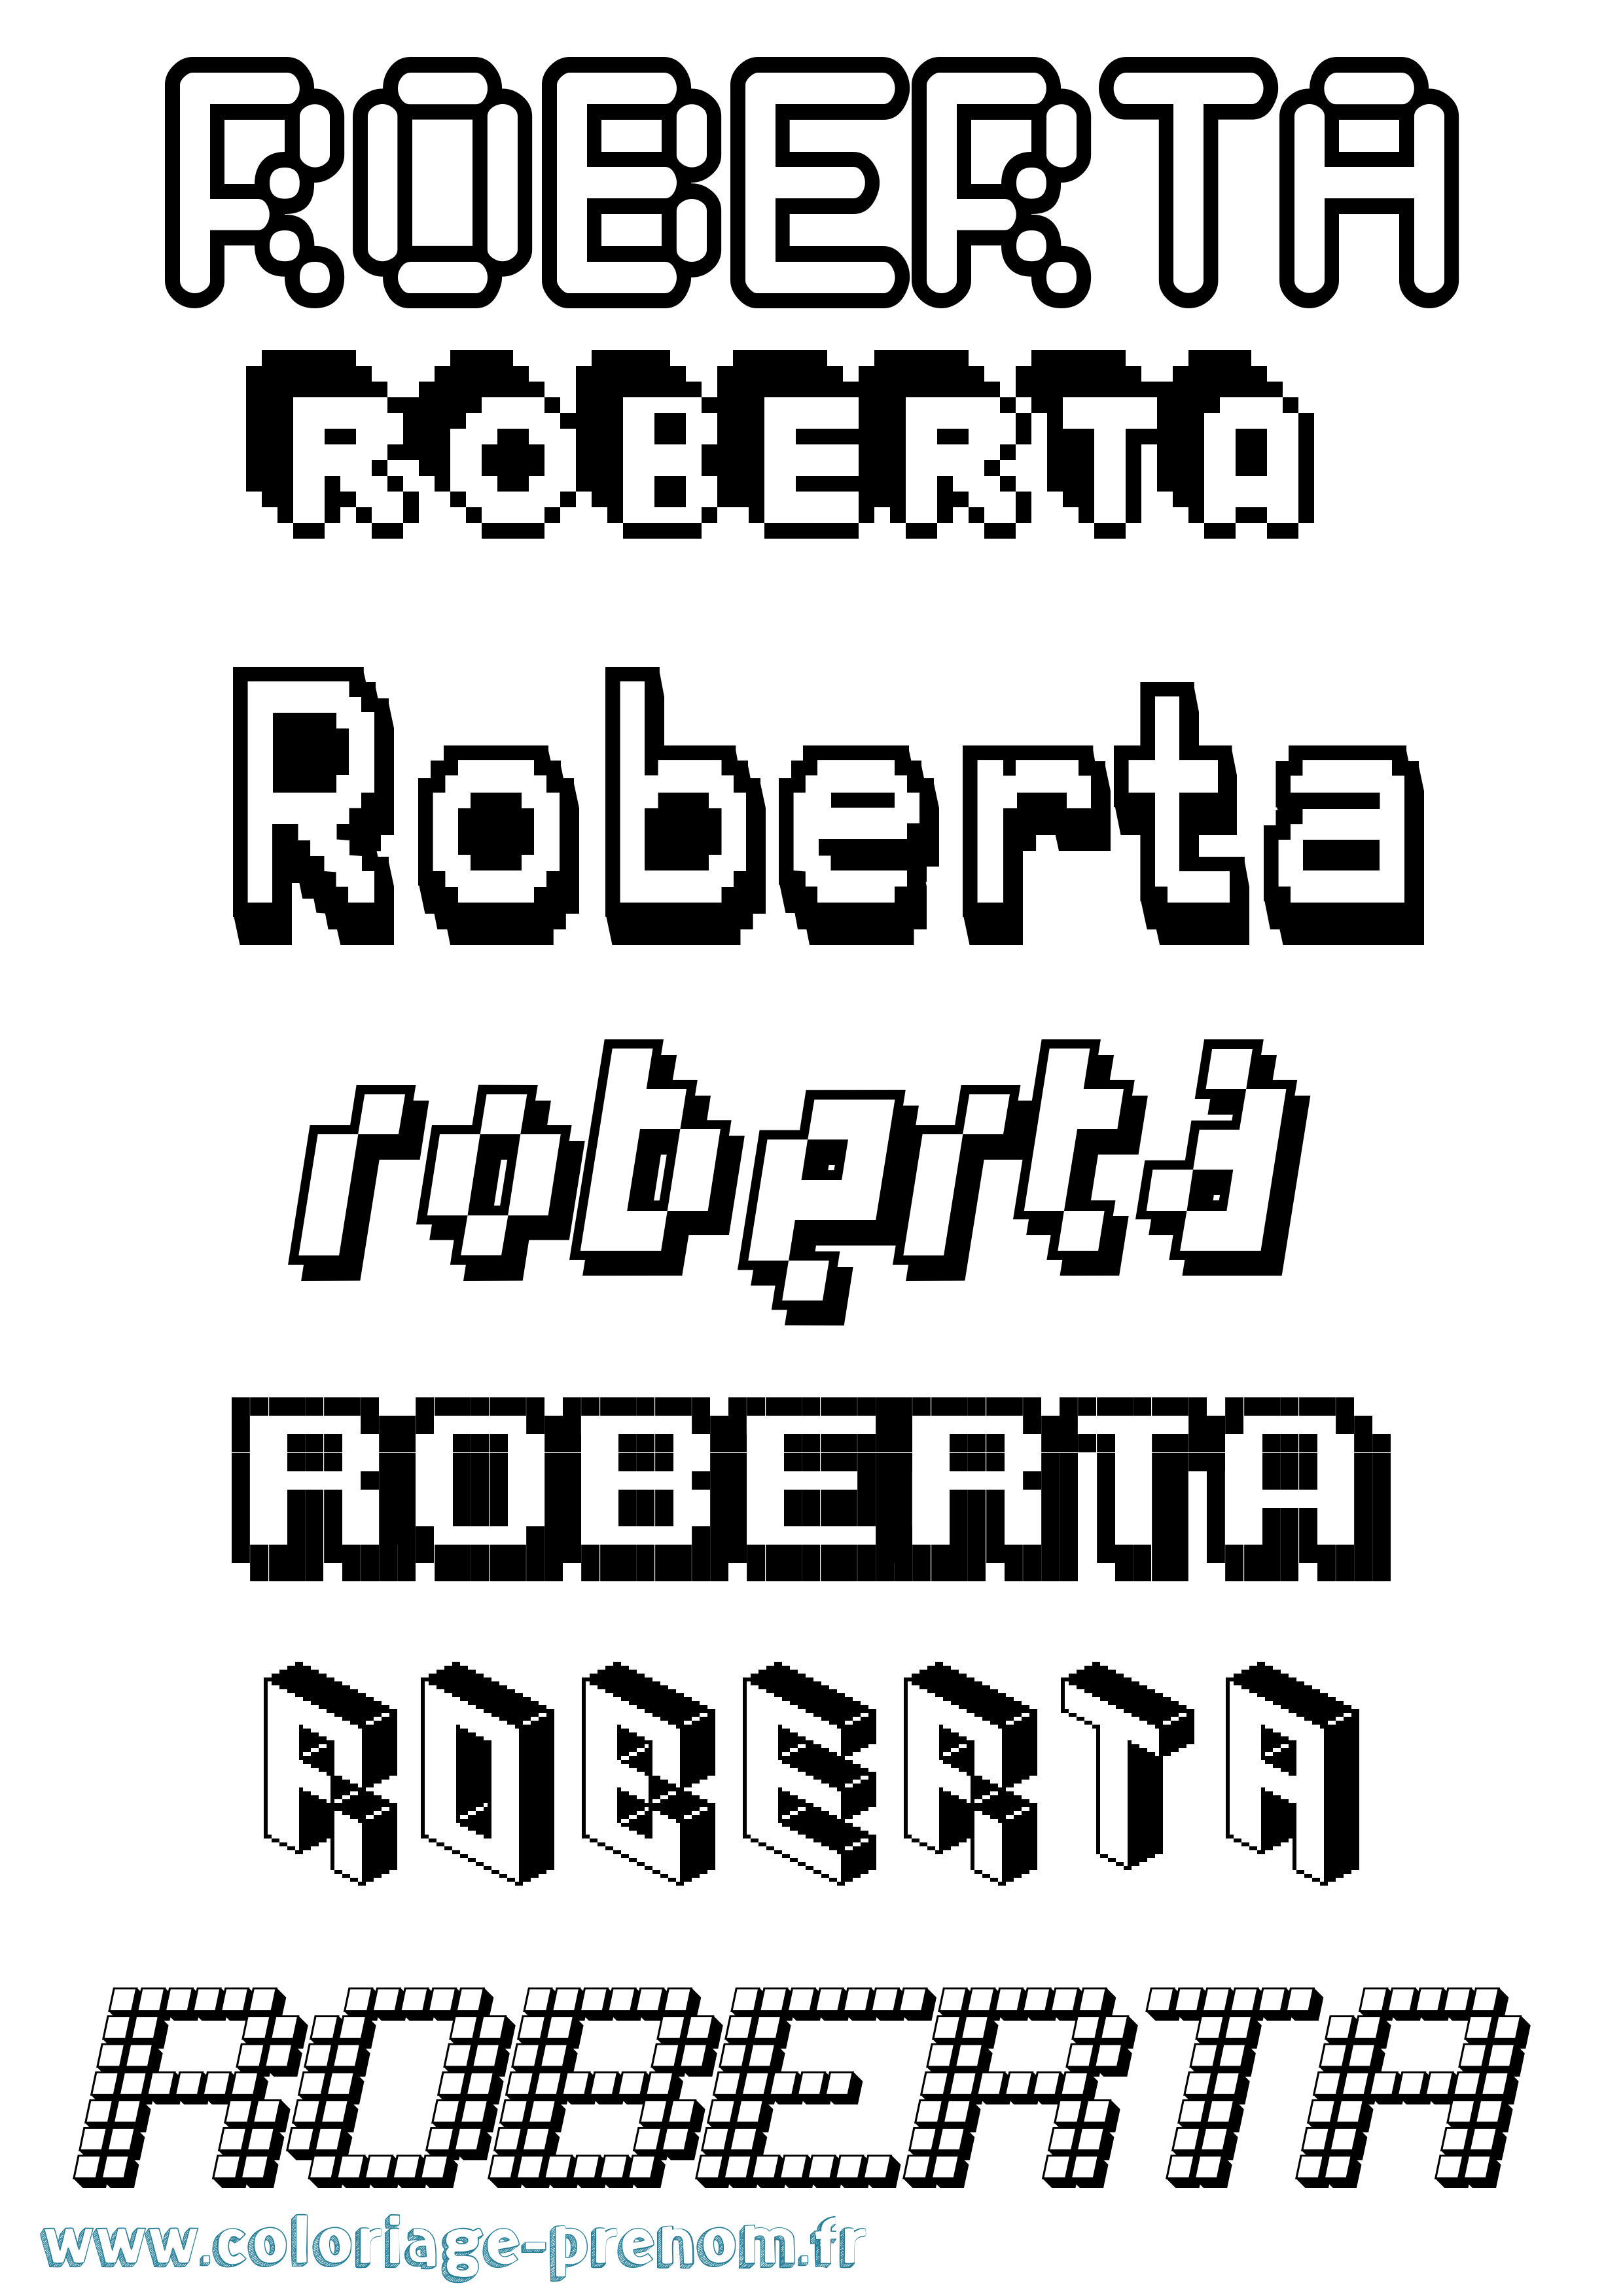 Coloriage prénom Roberta Pixel